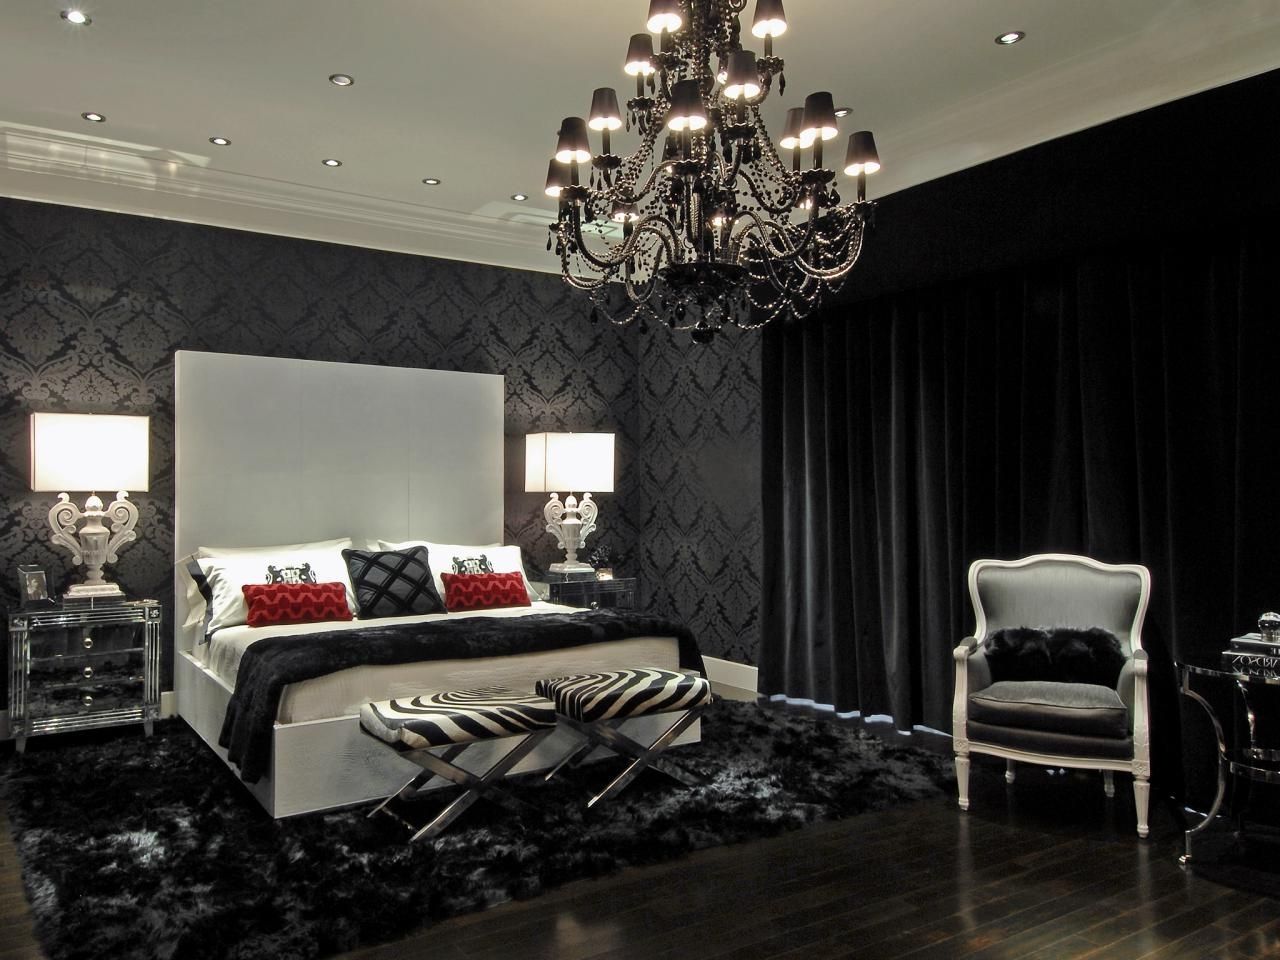 2019 Elegant Black Chandeliers For Bedroom Area – Howiezine With Regard To Black Chandelier Bedroom (View 3 of 20)